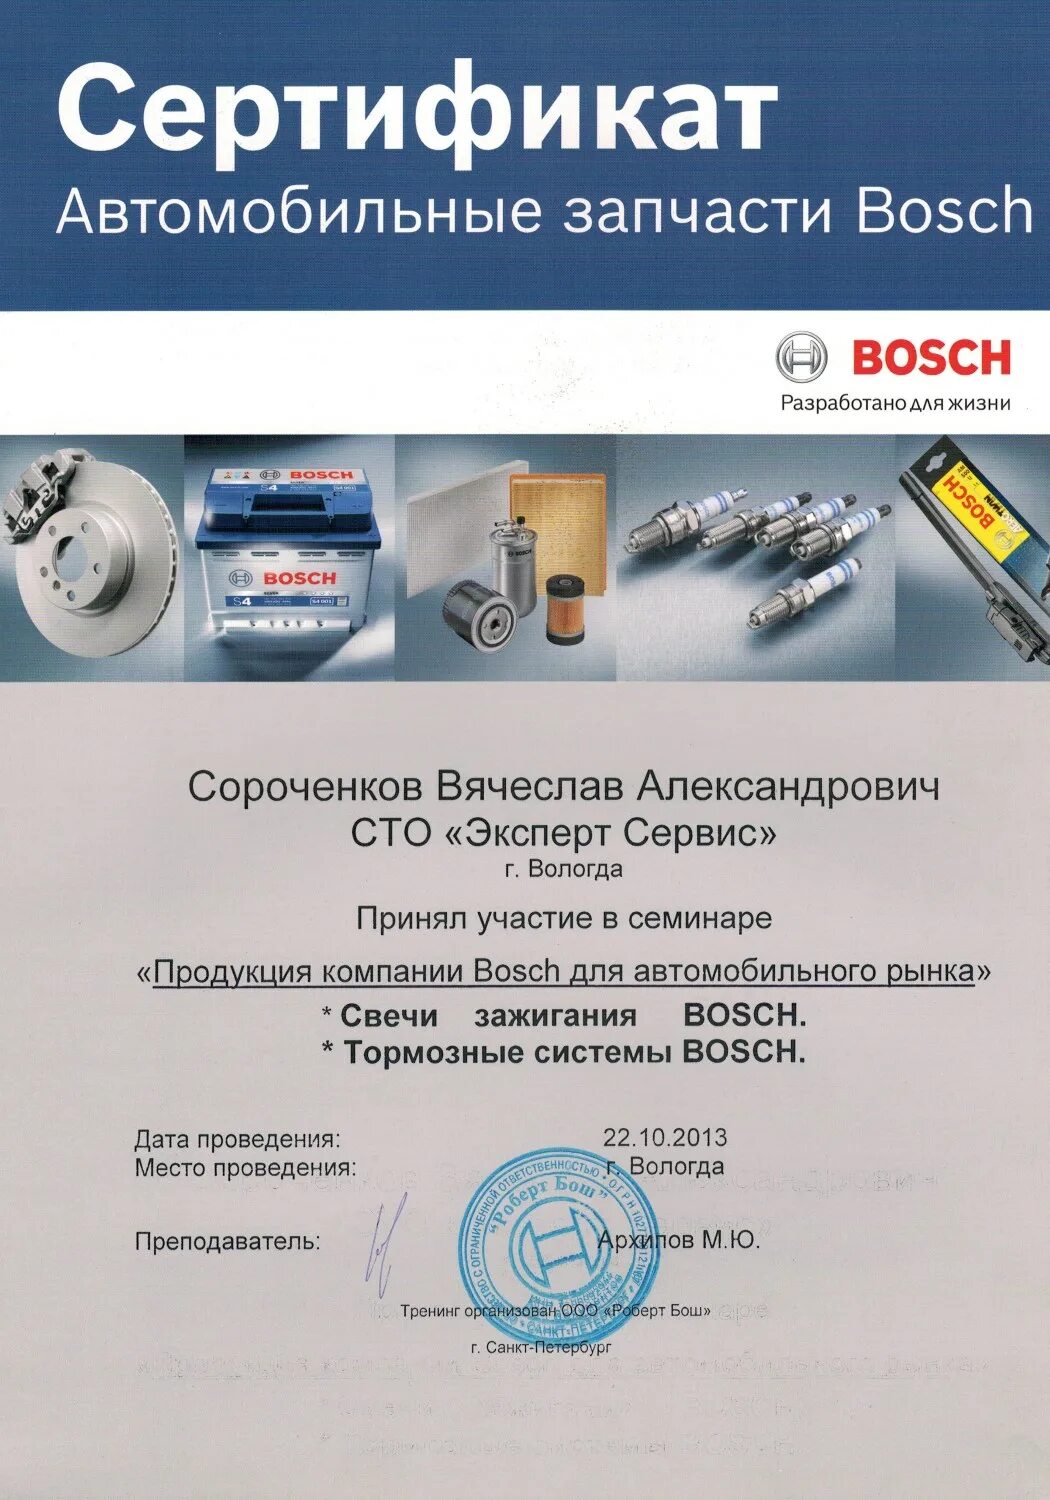 Сертификат на автомобильные запчасти. Сертификат на запасные части к автомобилю. Сертификат Bosch автозапчасти. Сертификат автосервиса.